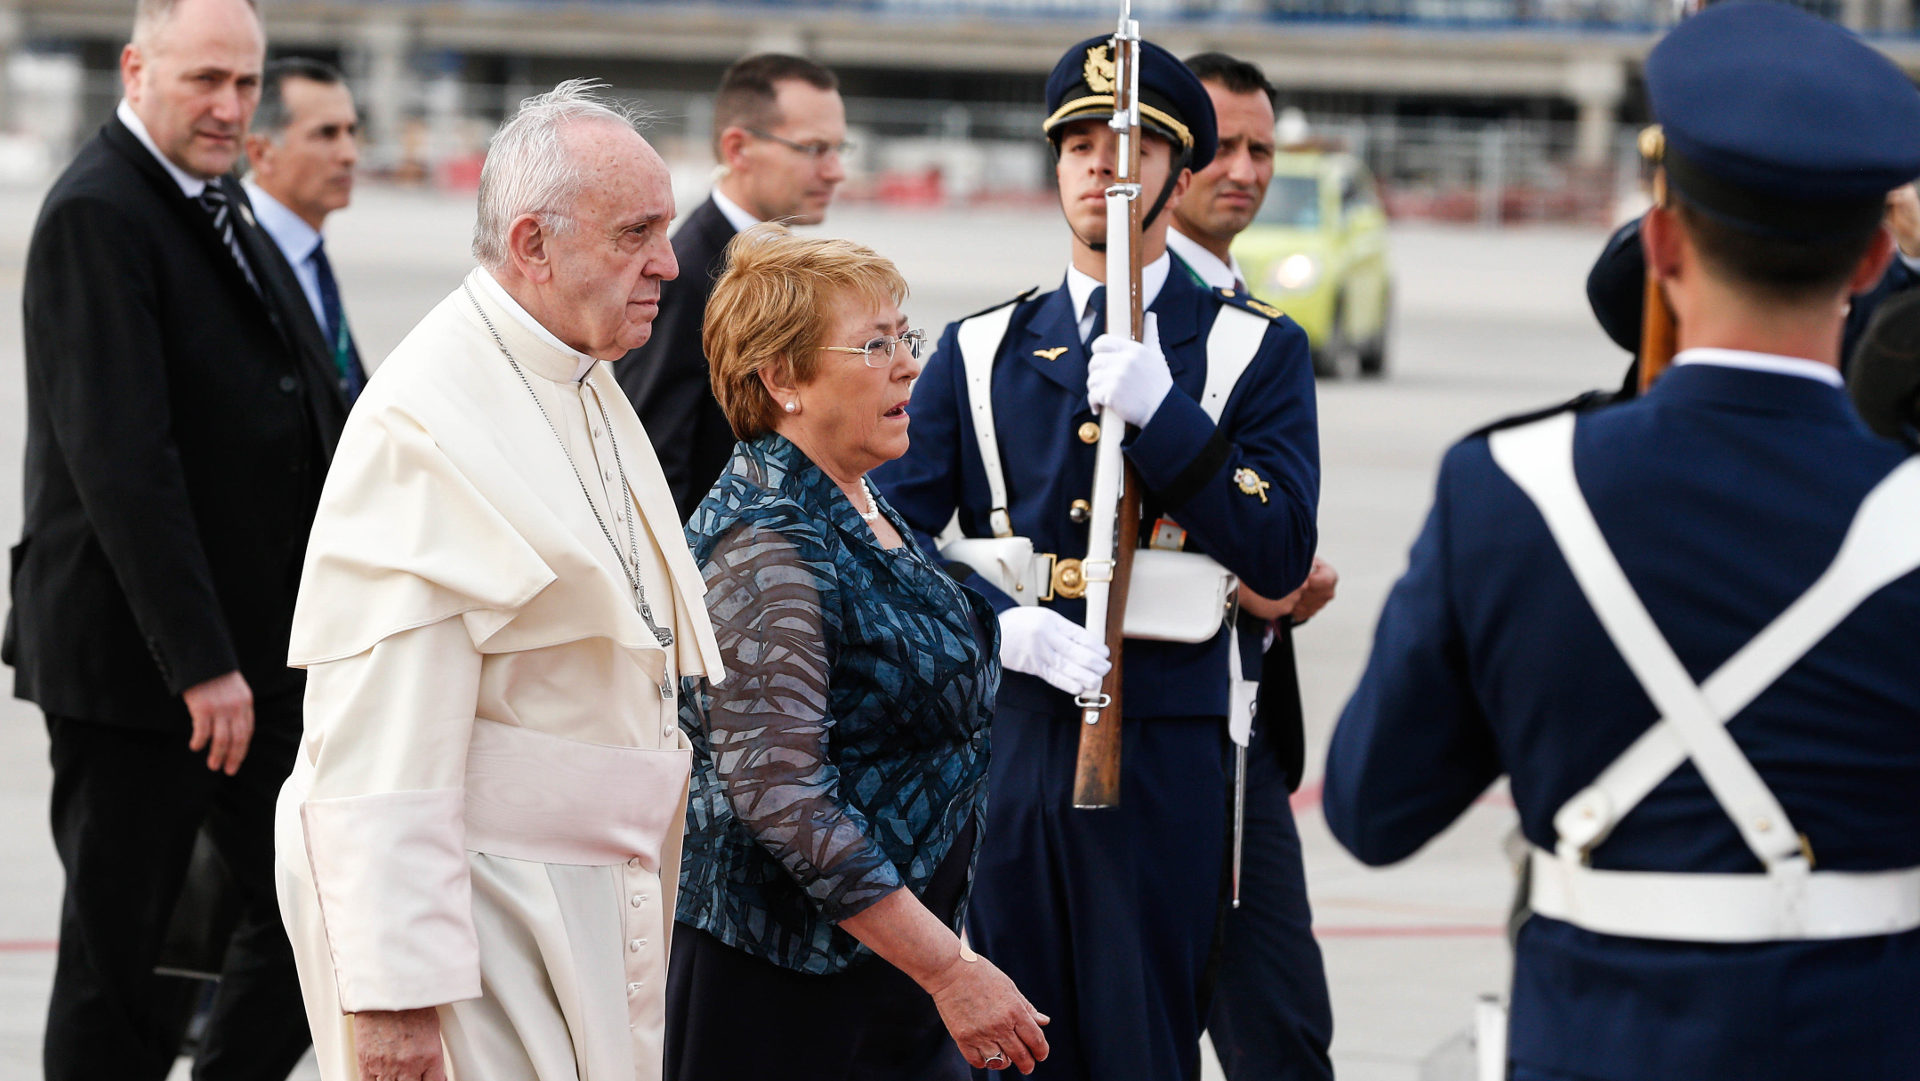 Papst Franziskus beim Empfang durch Staatspräsidentin Michelle Bachelet auf dem Flughafen der chilenischen Hauptstadt Santiago